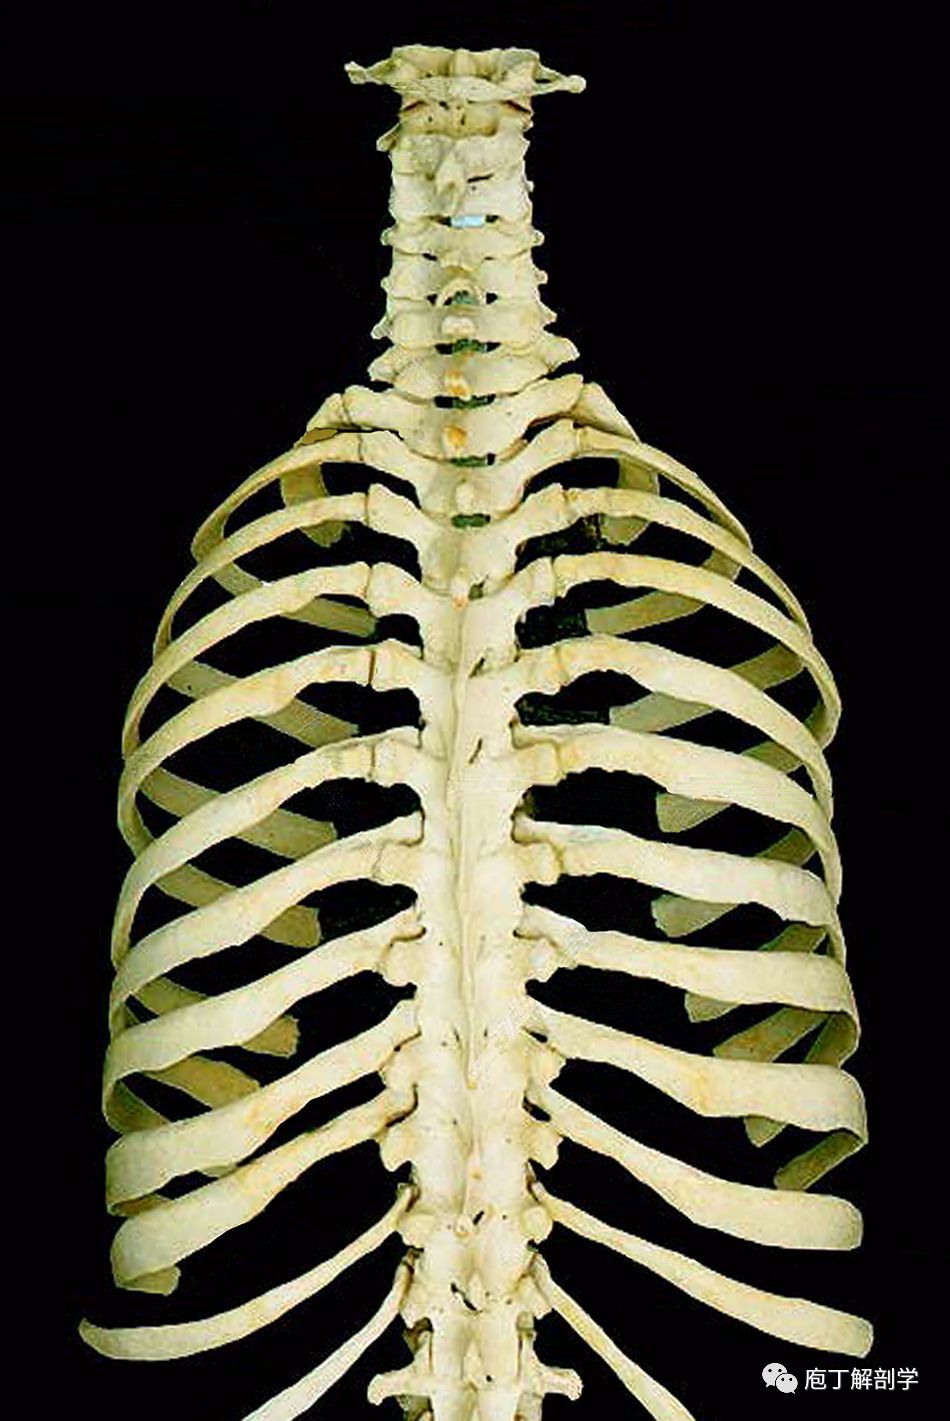 胸廓上口较小,由胸骨柄上缘,第1肋和第1胸椎椎体围成,是胸腔与颈部的